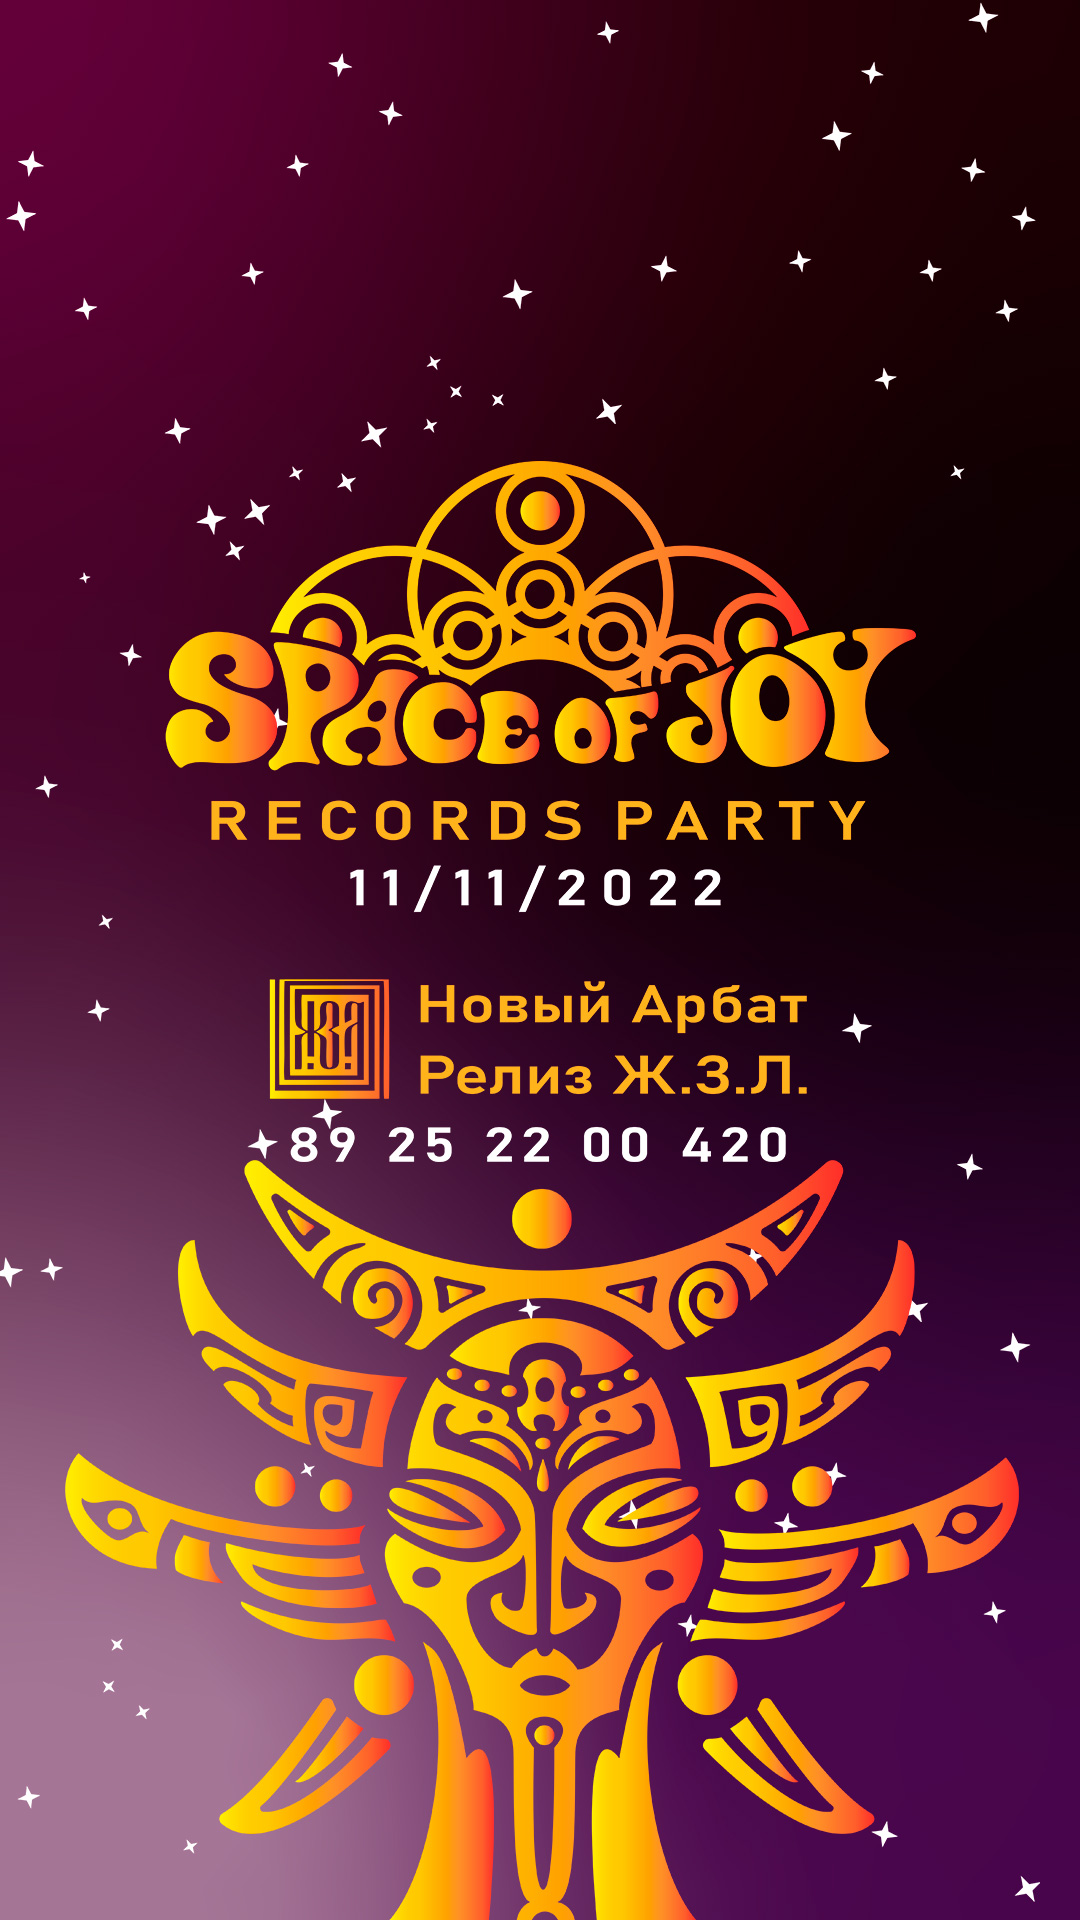 SpaceofJoy Records Party